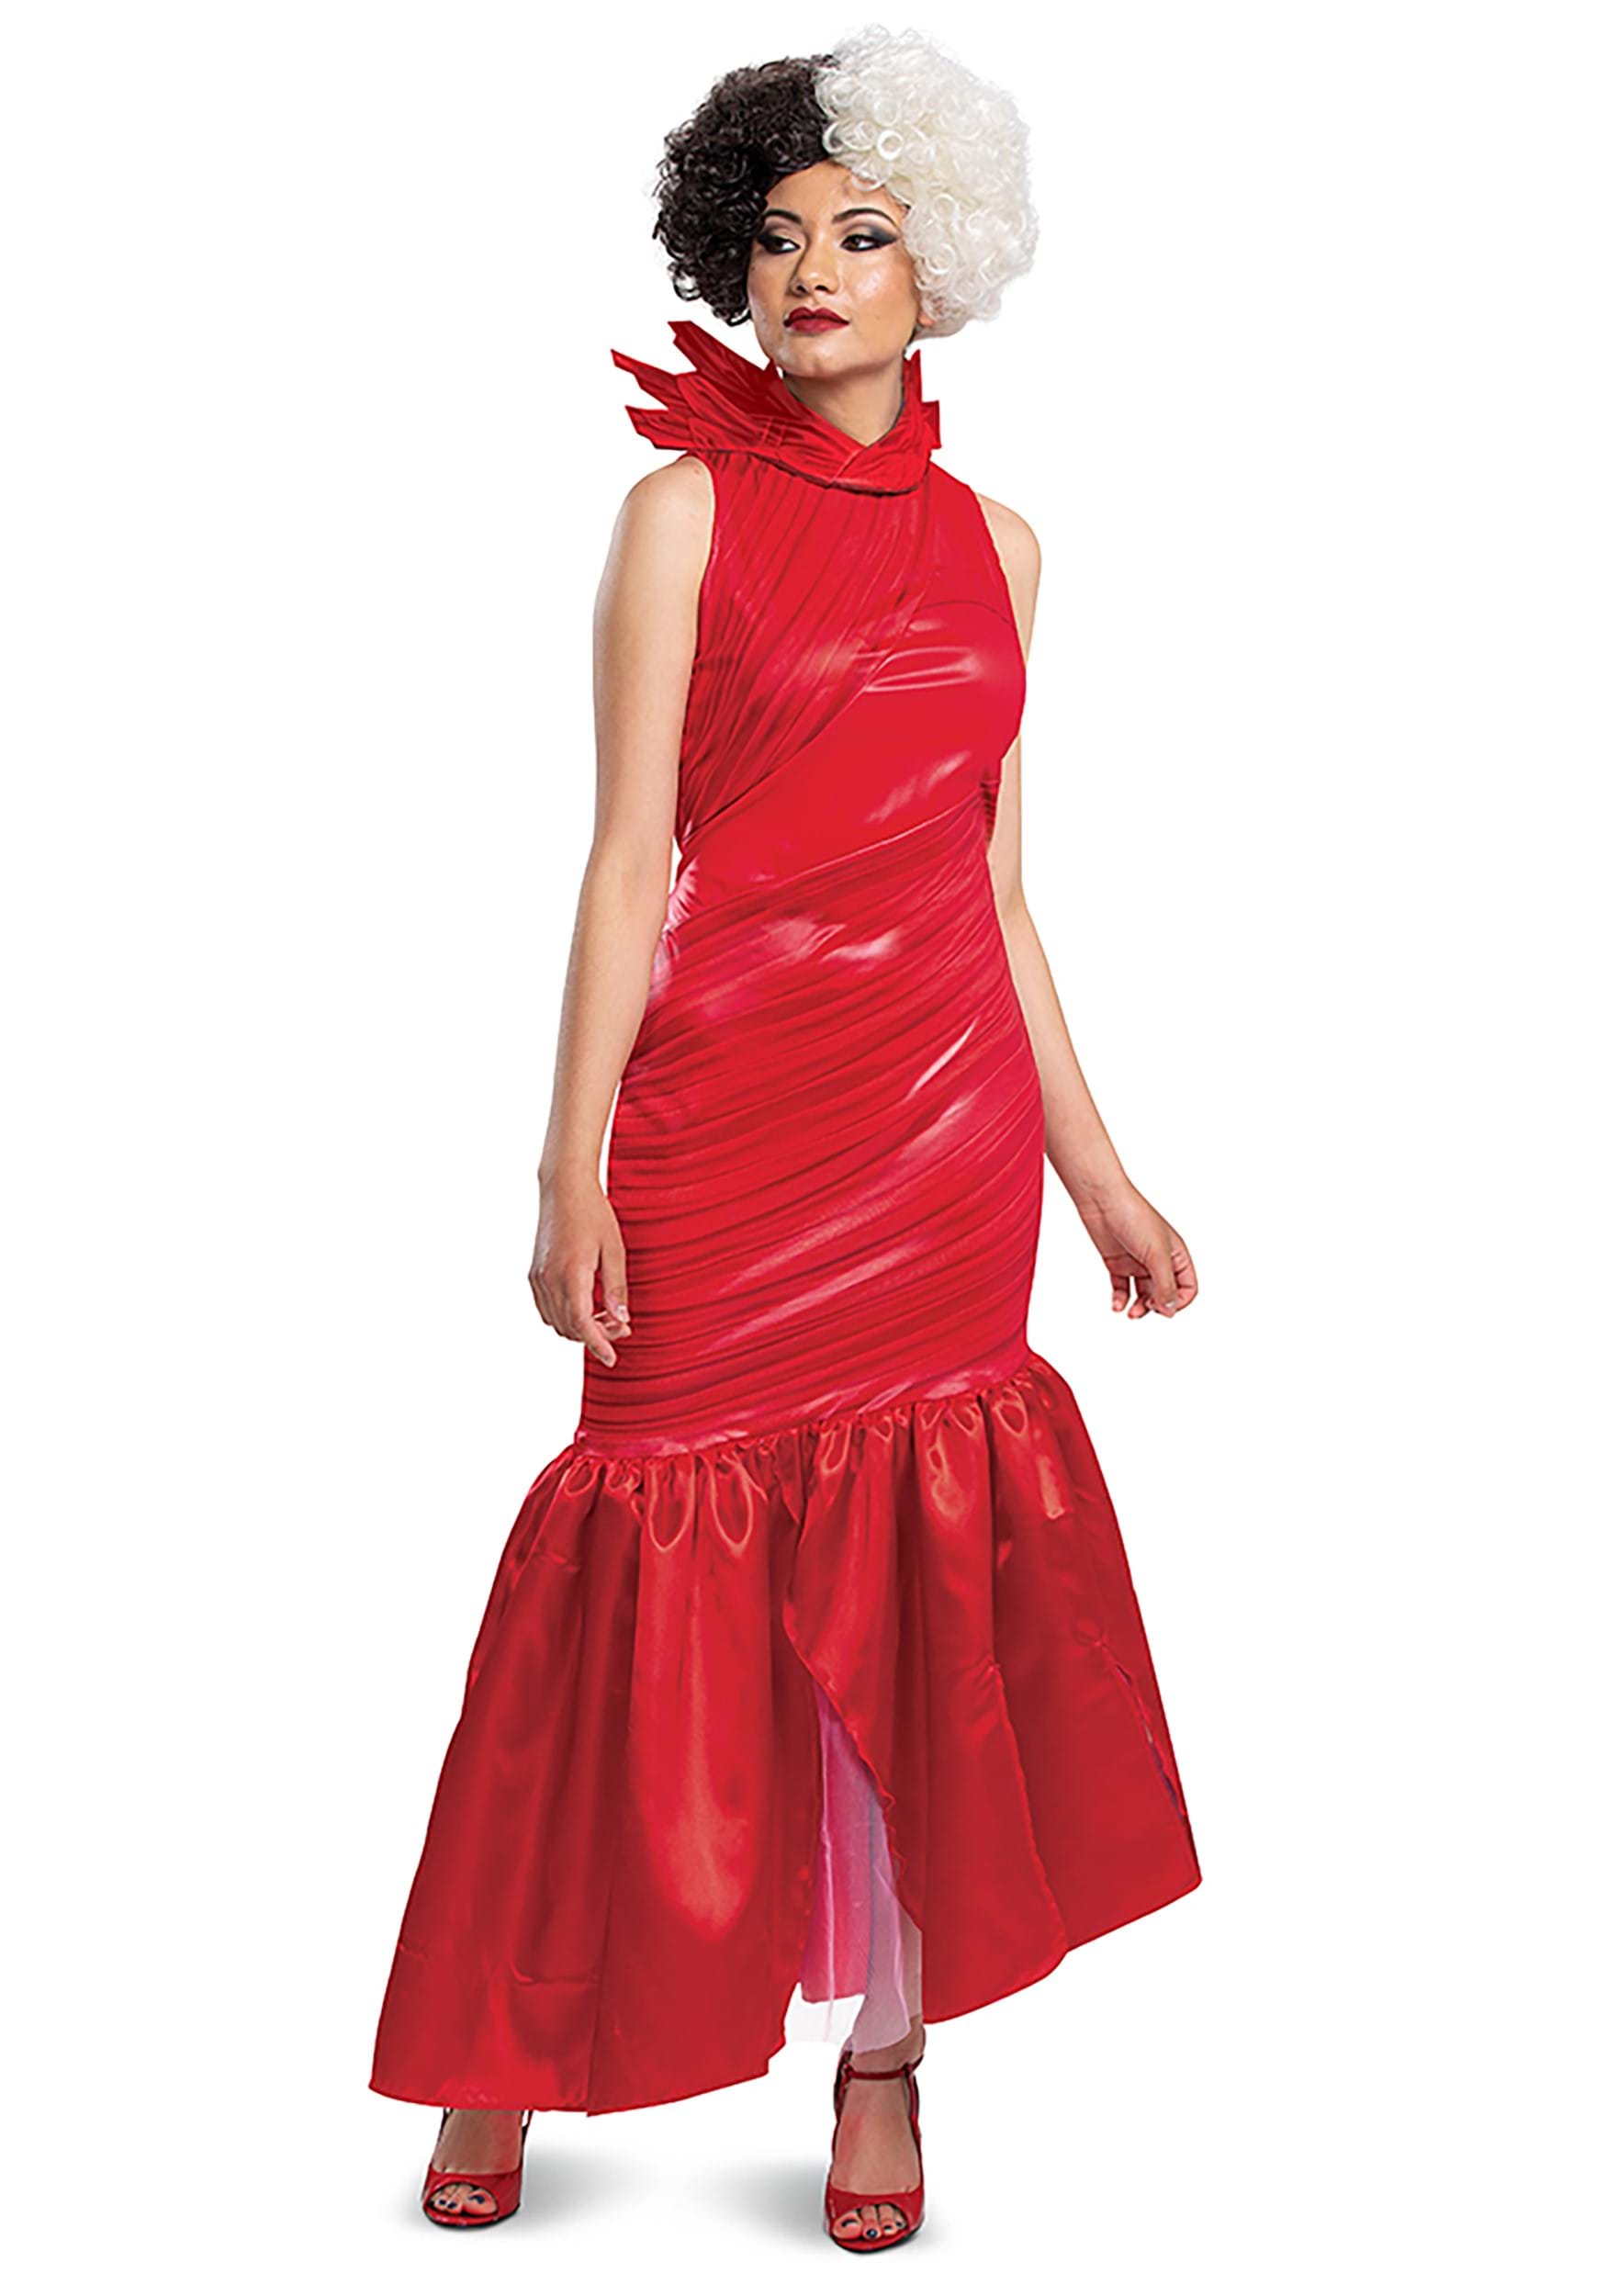 Image of Adult Cruella Red Dress Classic Costume ID DI118539-L